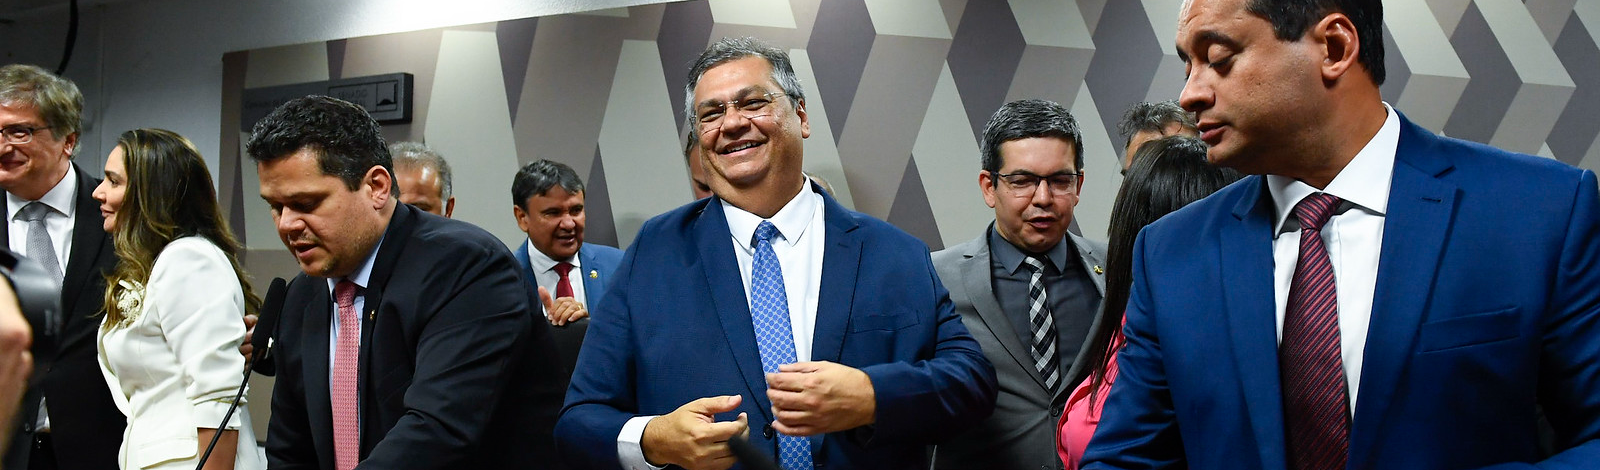 Aprovação de Flávio Dino ao STF é vitória do Governo Lula contra bancada bolsonarista